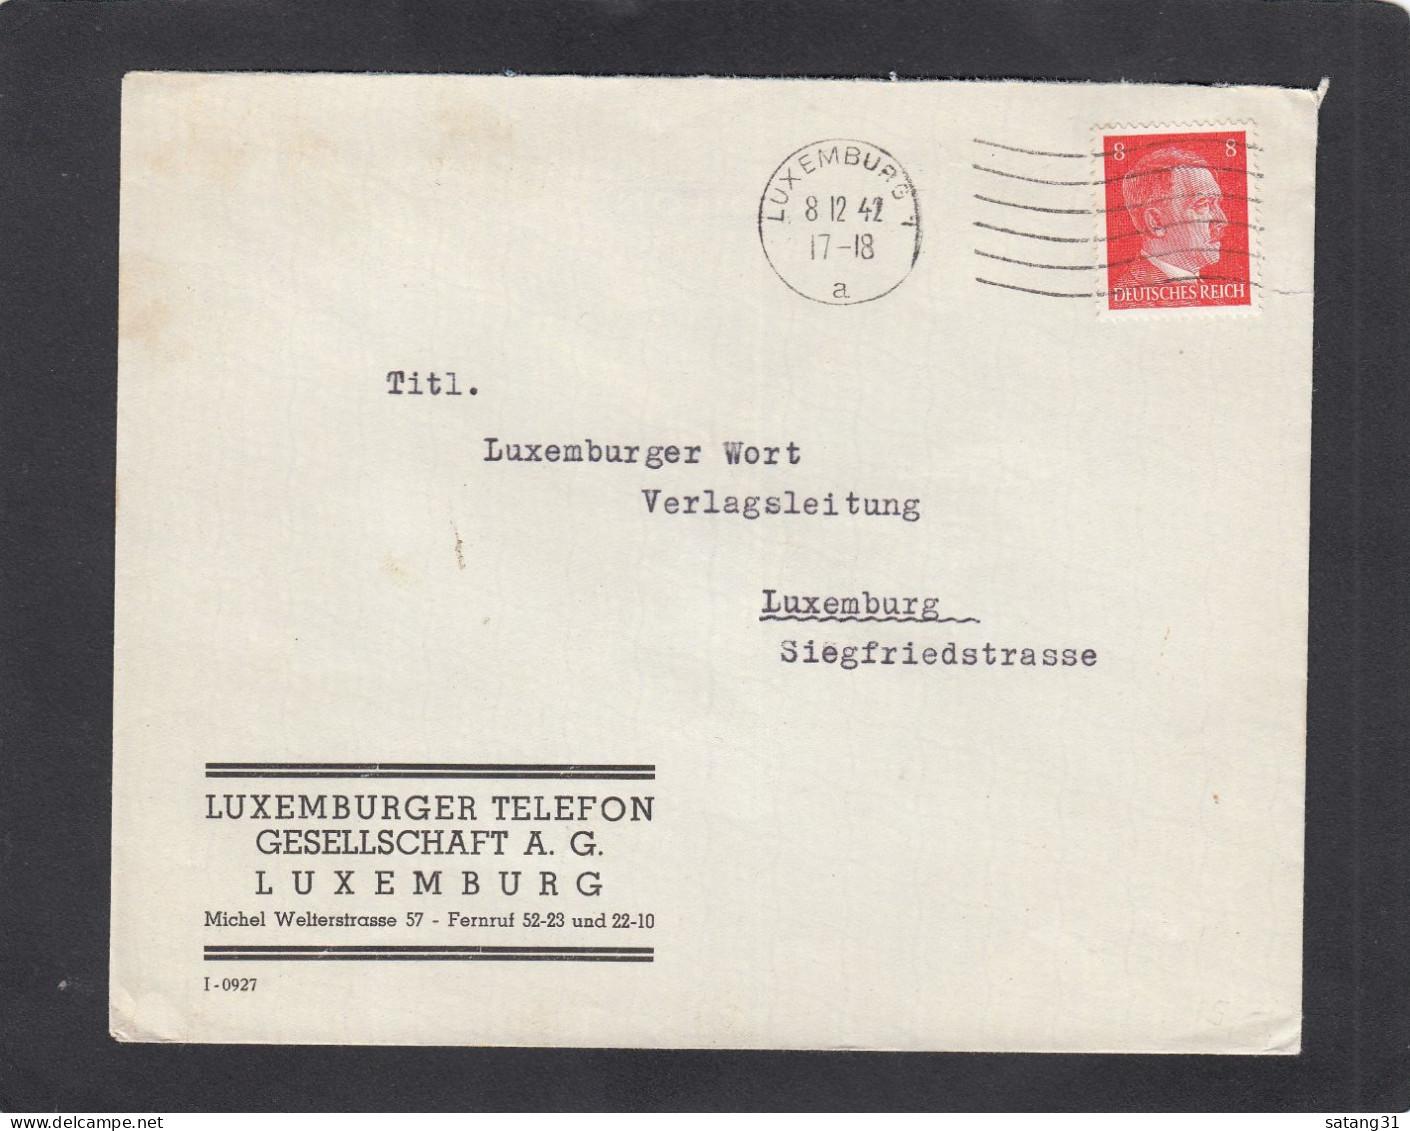 LUXEMBURGER TELEFON GESELLSCHAFT A.G., LUXEMBURG. - 1940-1944 Occupation Allemande